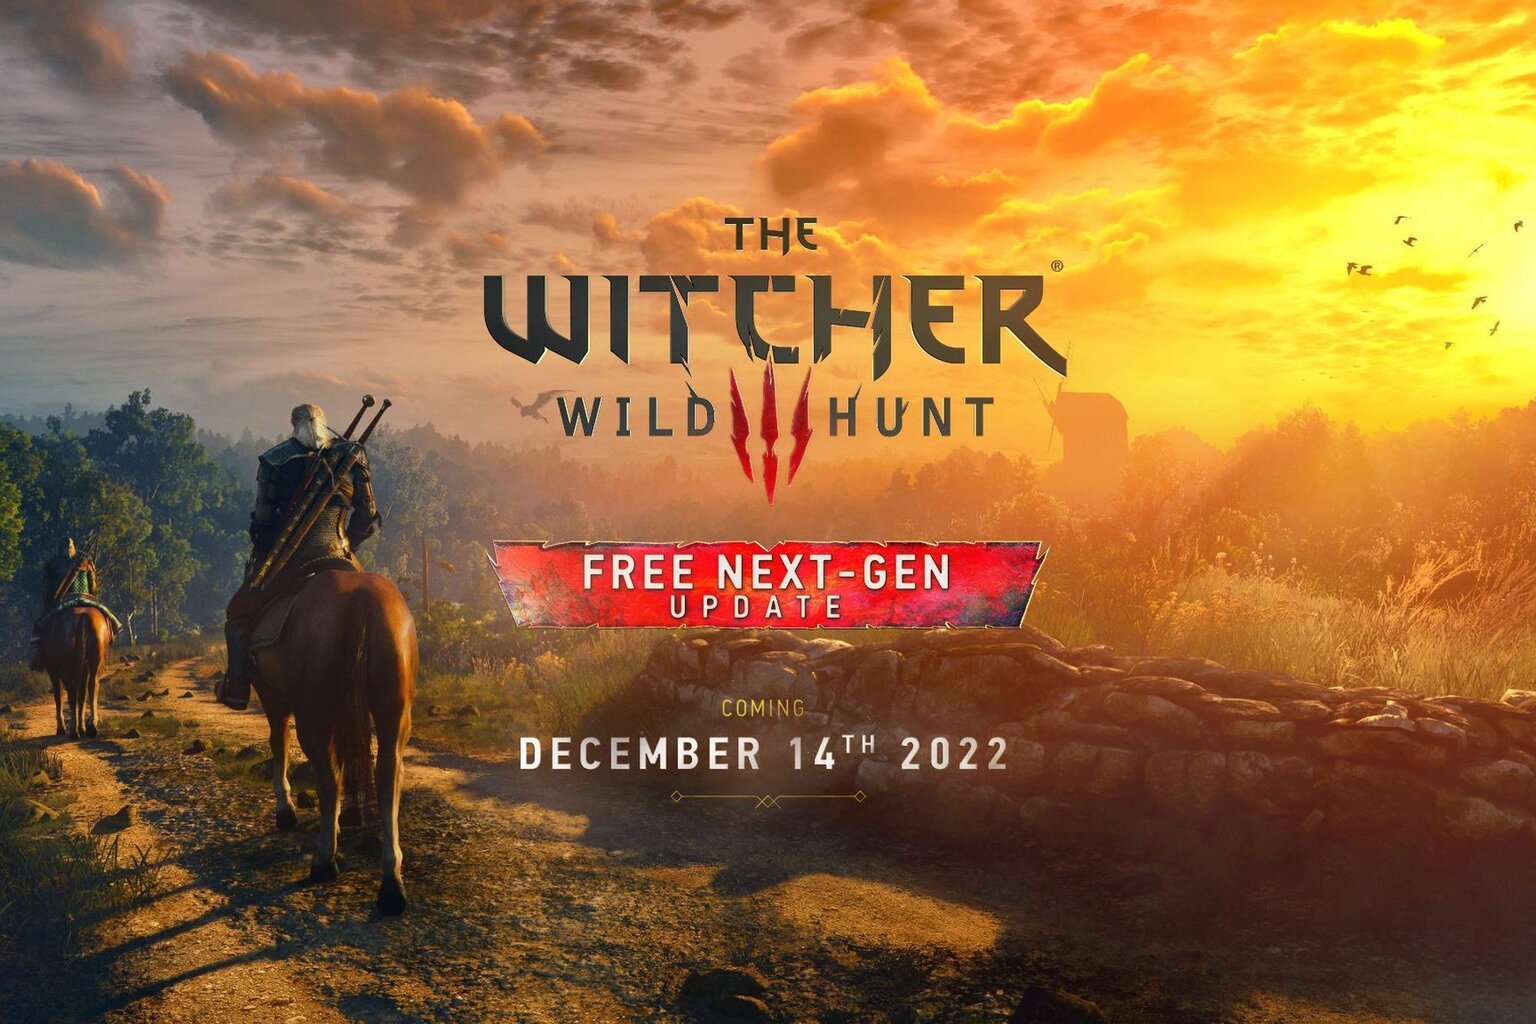 The Witcher 3: Game of the year Edition, PS4 kaina ir informacija | Kompiuteriniai žaidimai | pigu.lt